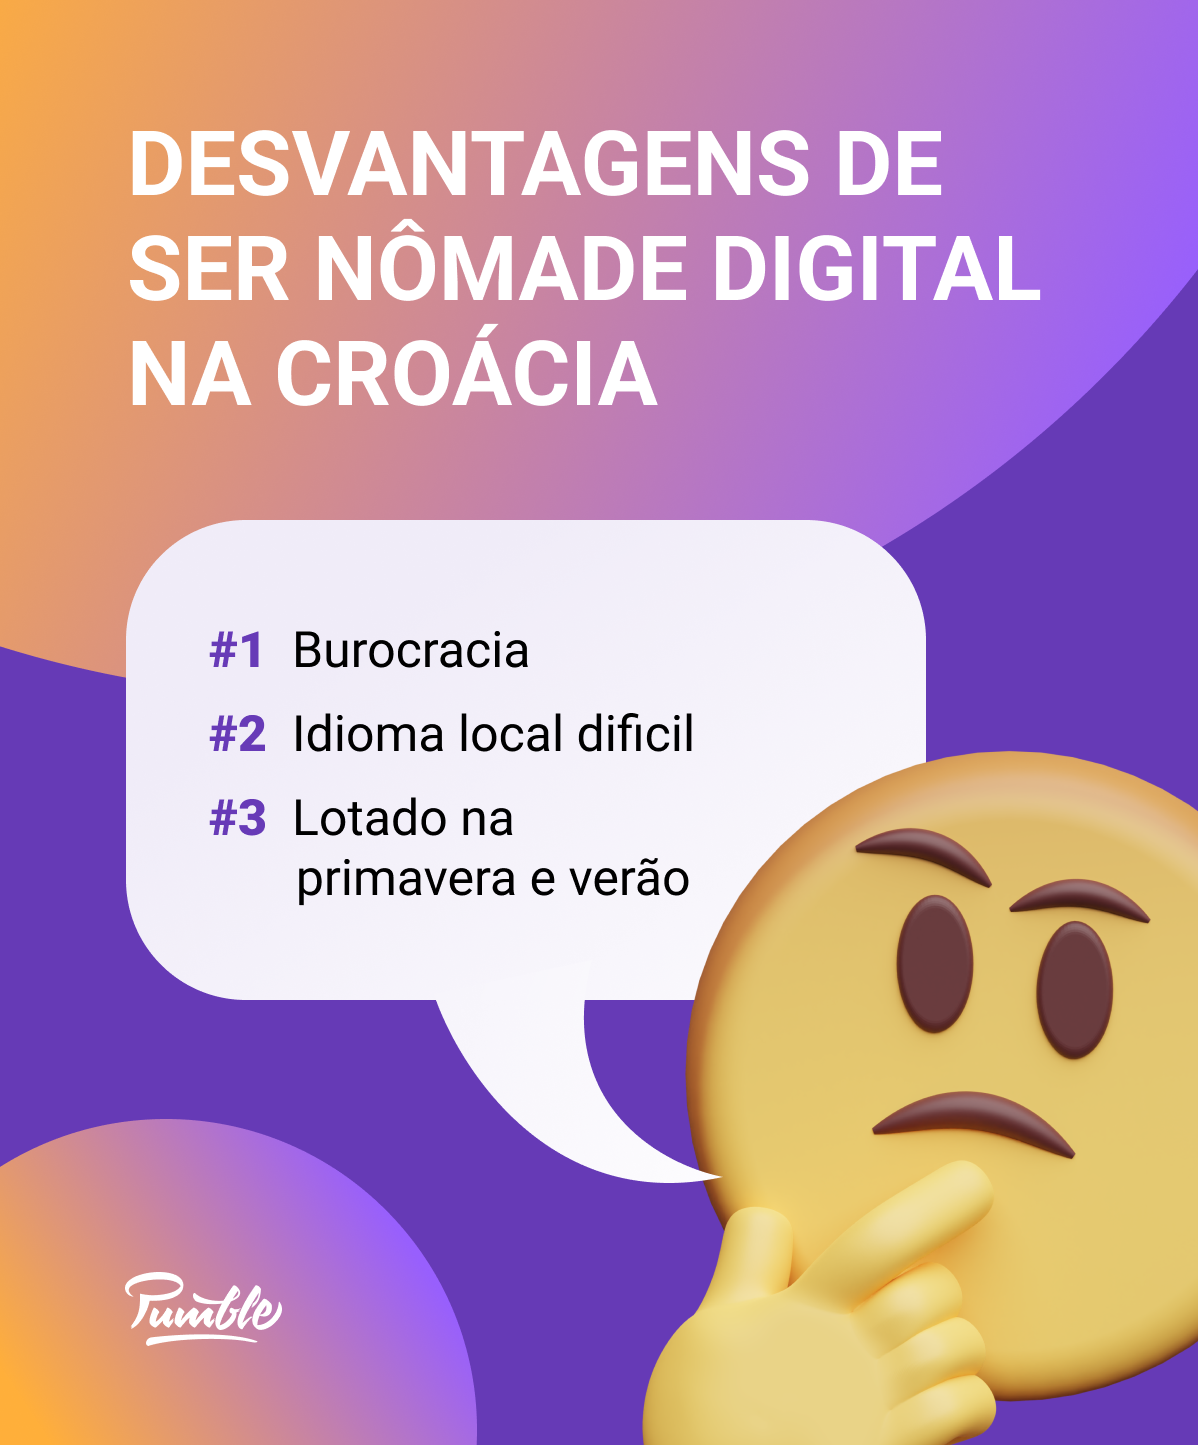 Desvantagens de ser um nômade digital na Croácia